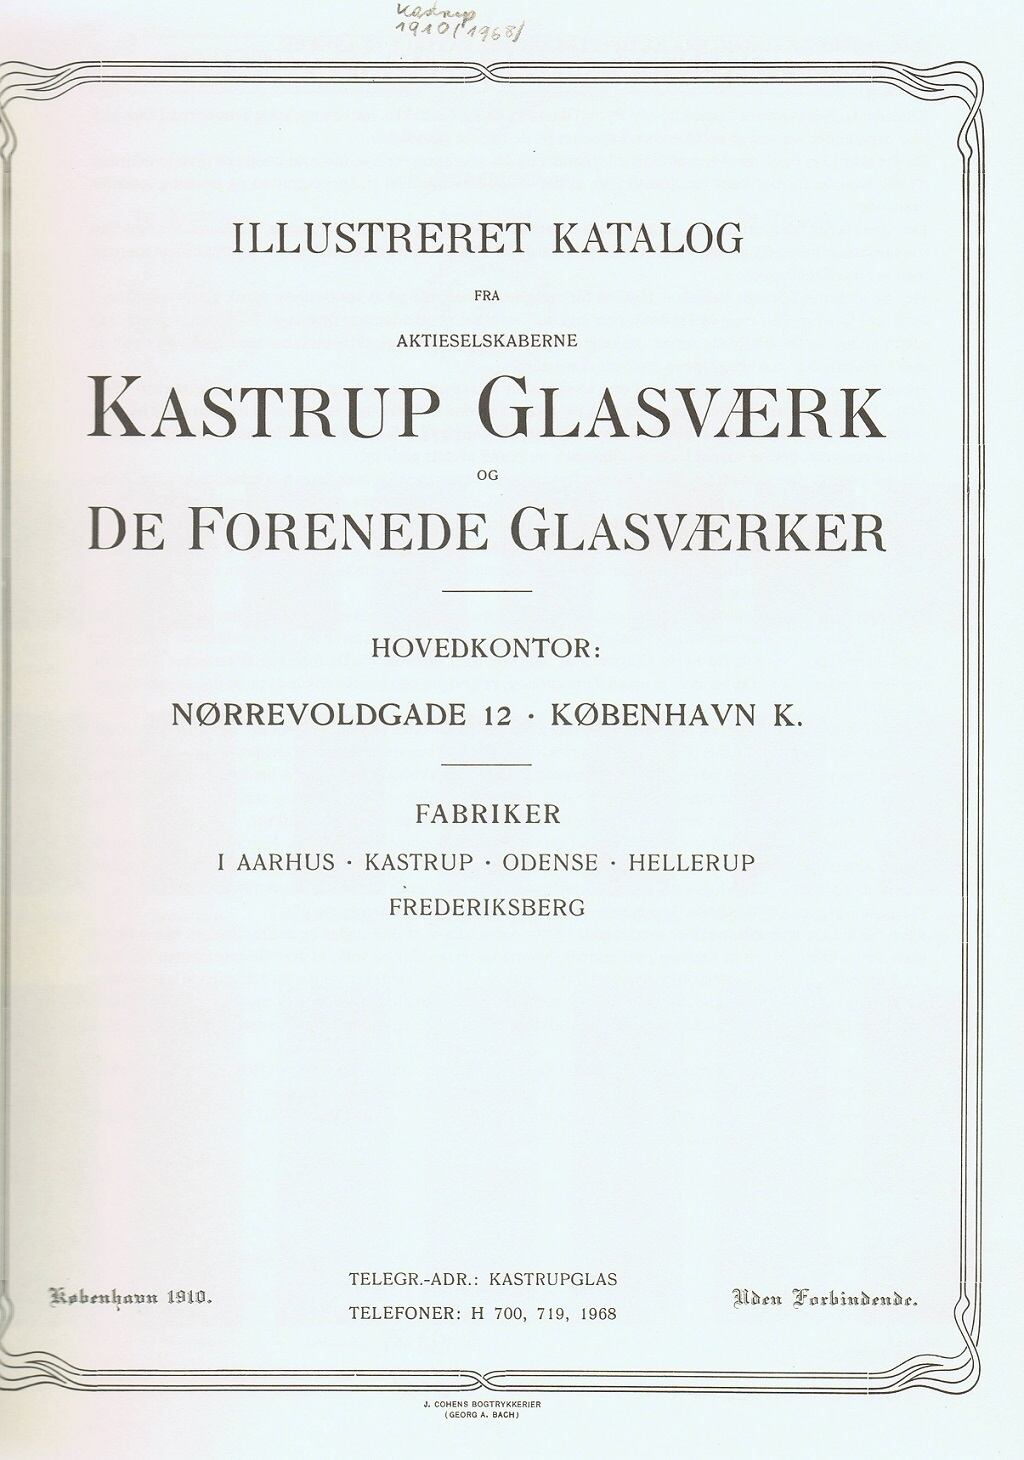 "Kastrup 1910"